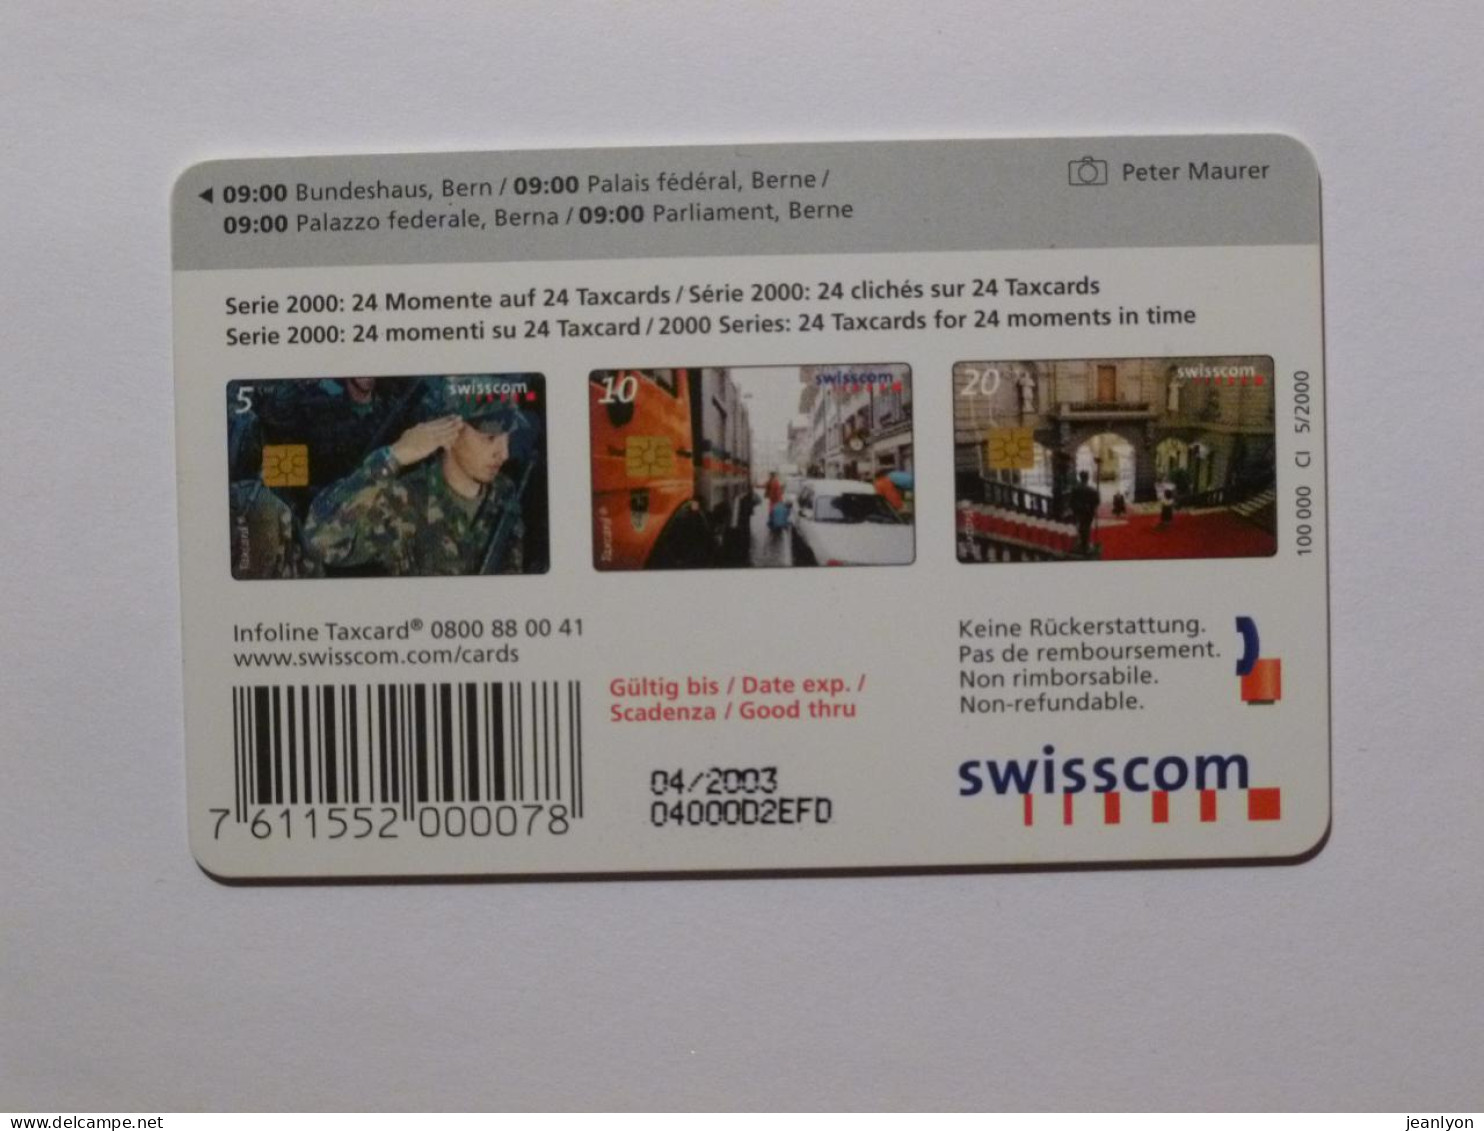 PALAIS FEDERAL - BERNE - Batiment / Statue / Escalier - Télécarte Suisse Swisscom - Paysages